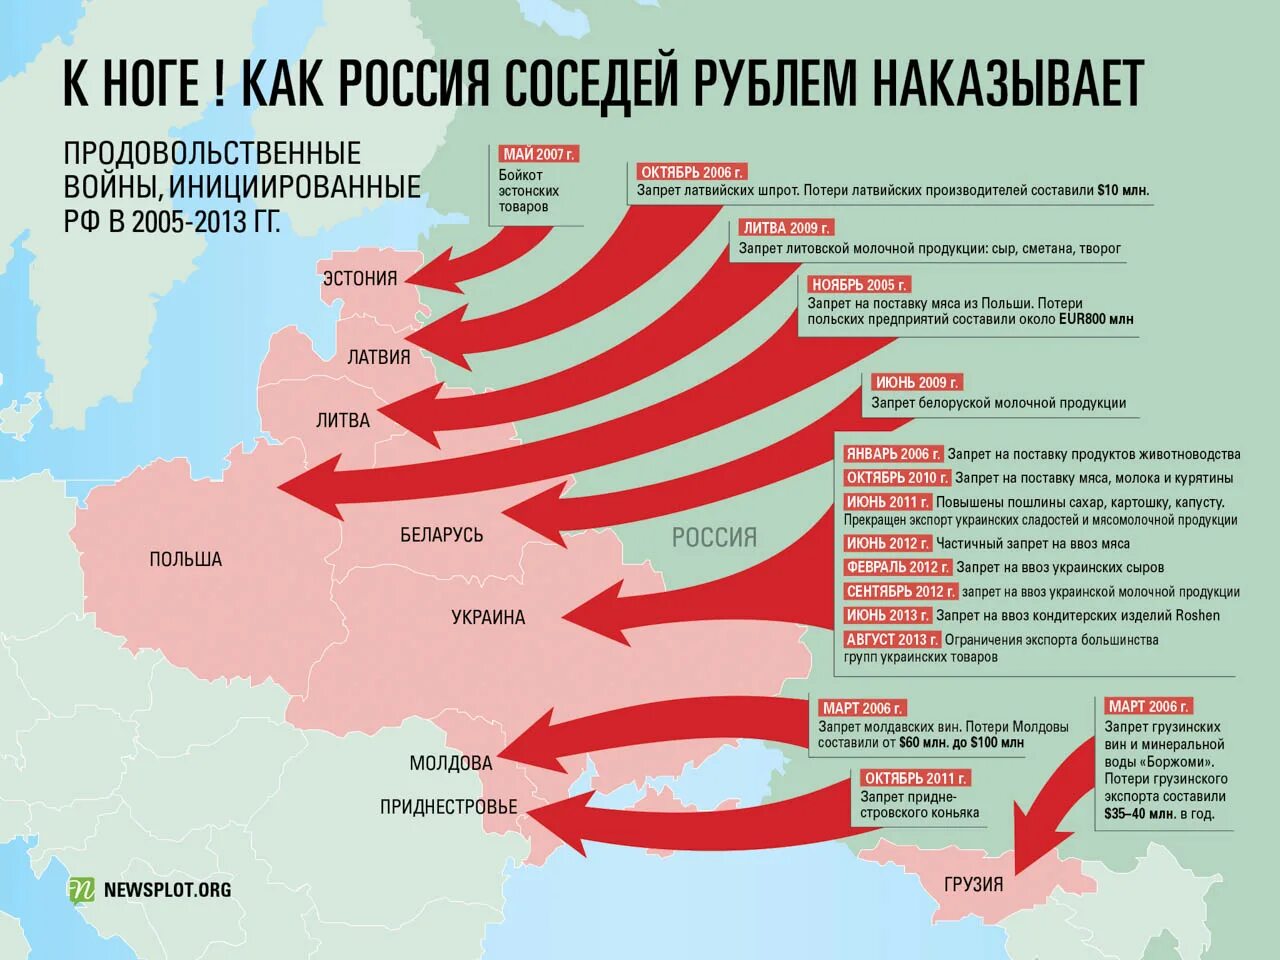 План вторжения на Украину. Карта вайна Росси в Украину. Стары которые воюют с Украиной. Государство, с которым воевала Россия. Цель рф на украине